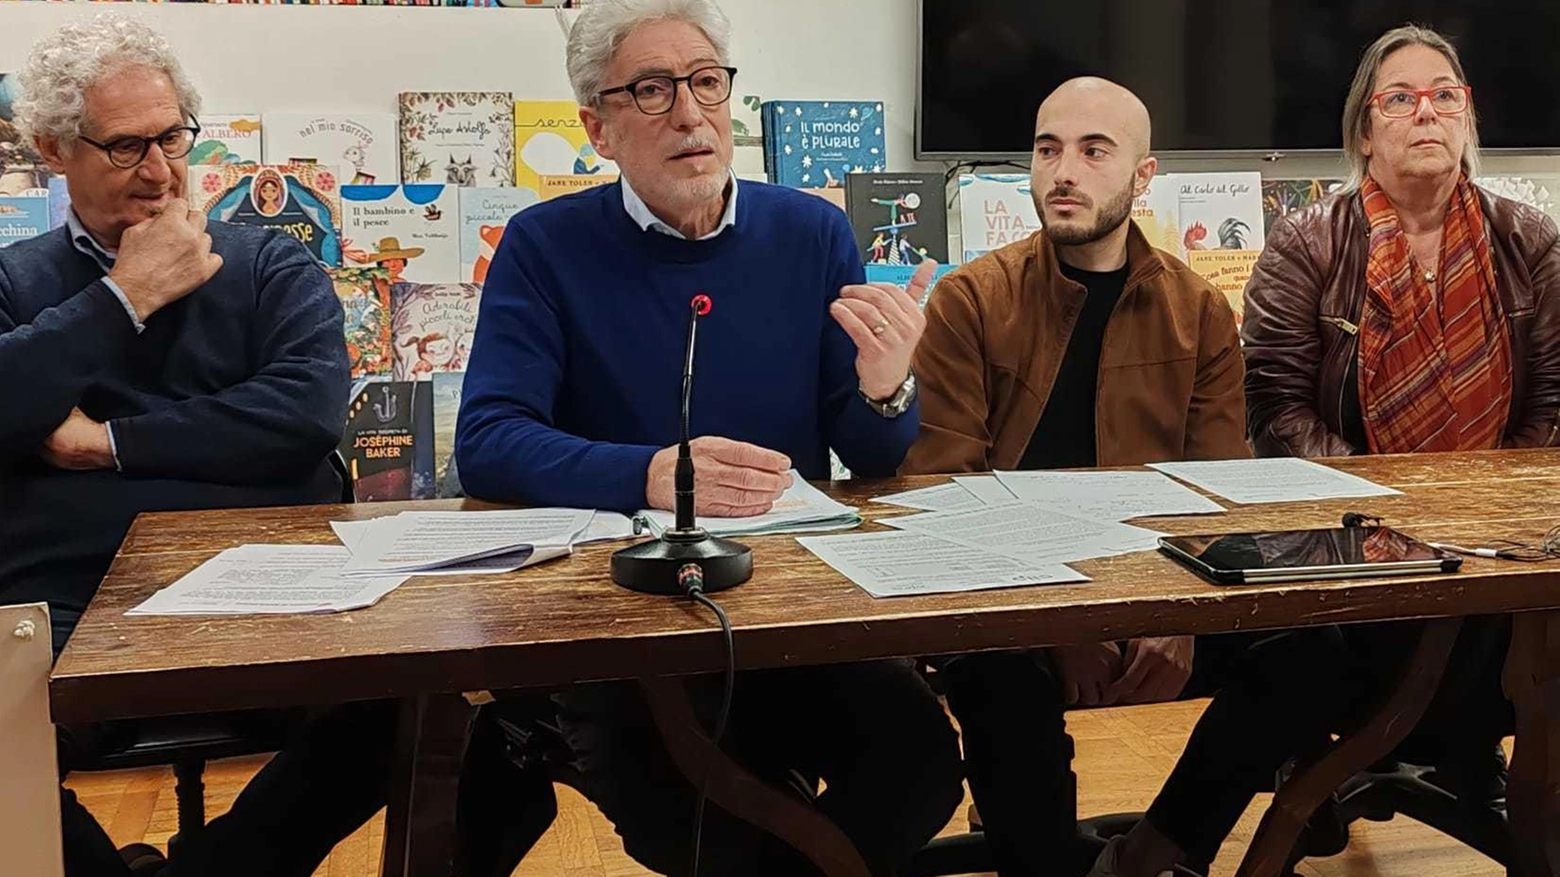 Il ’Tavolo Piceno per l’Acqua Bene Comune’ attraverso una delegazione capitanata da Massimo Rossi attacca: "I sindaci fermino questa mossa".